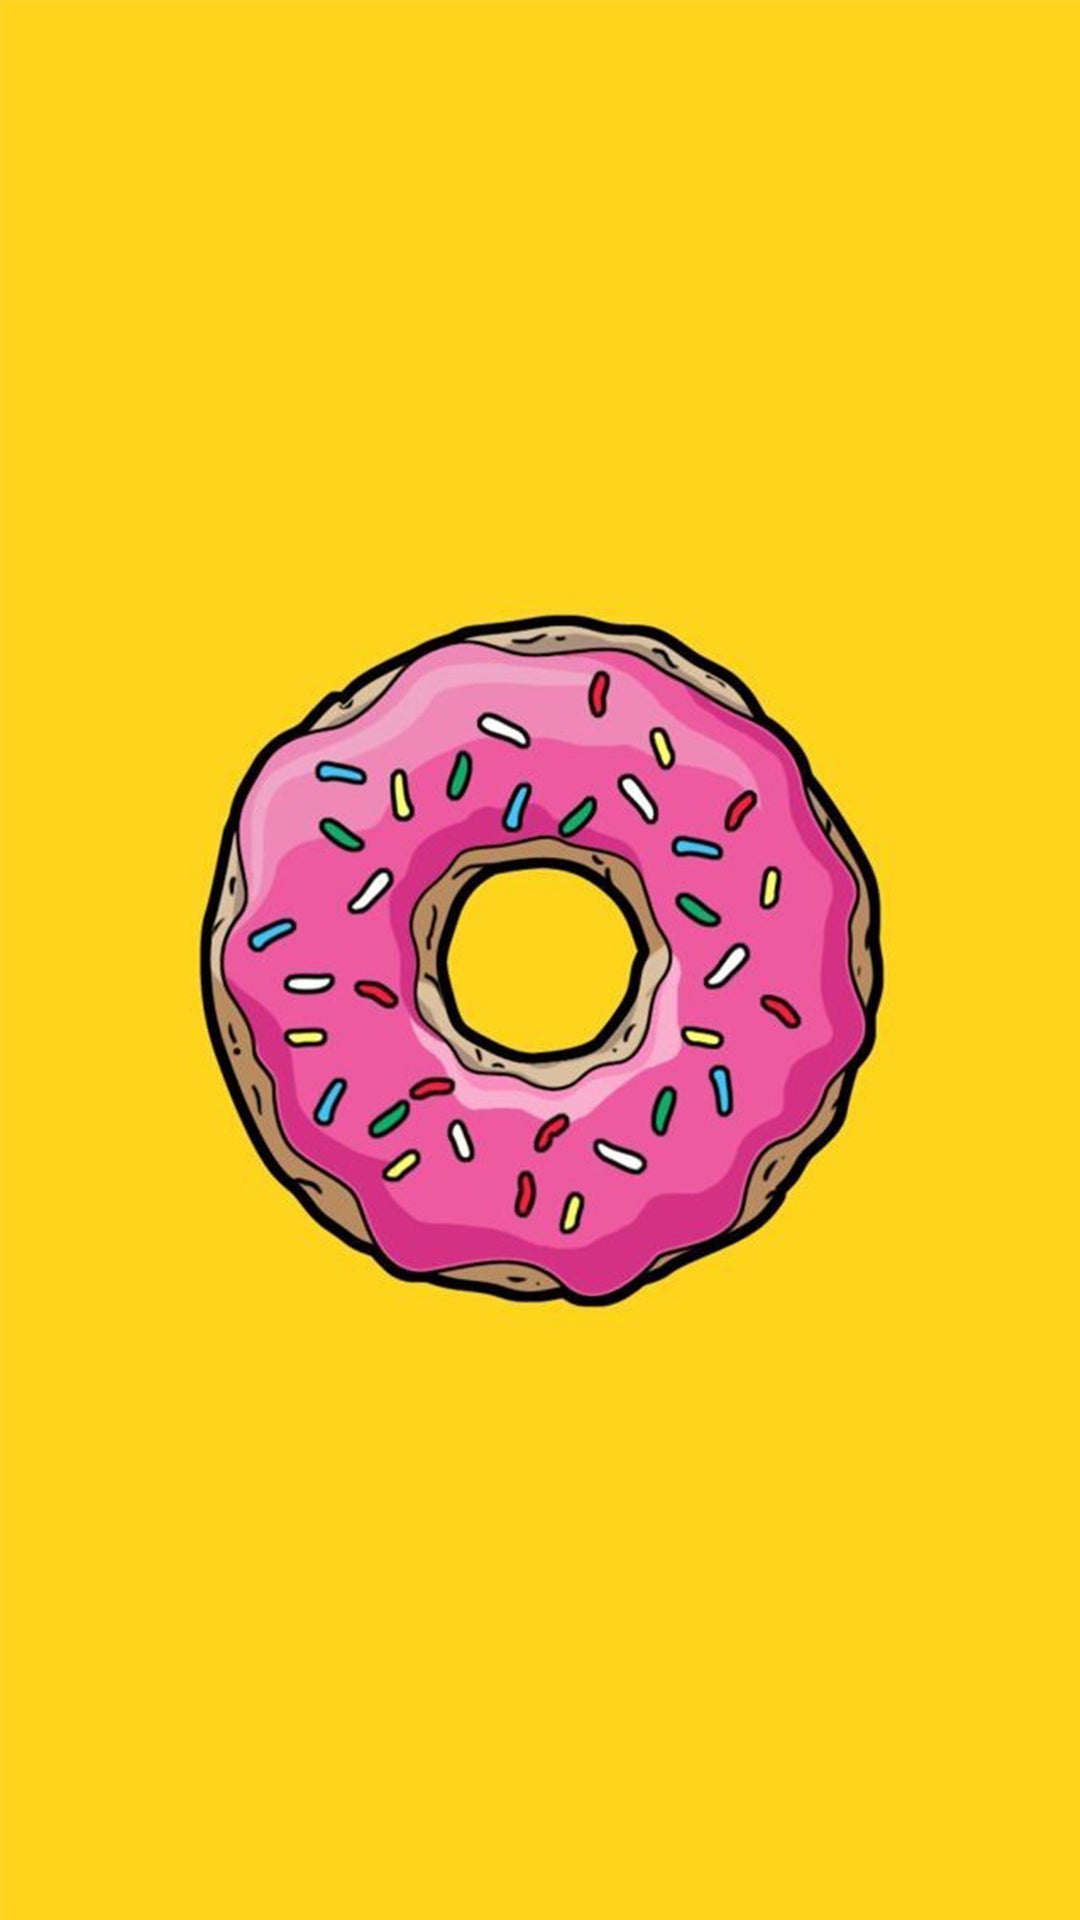 Le donut authentique au glaçage rose et aux vermicelles colorées, vu de face sur fond jaune.